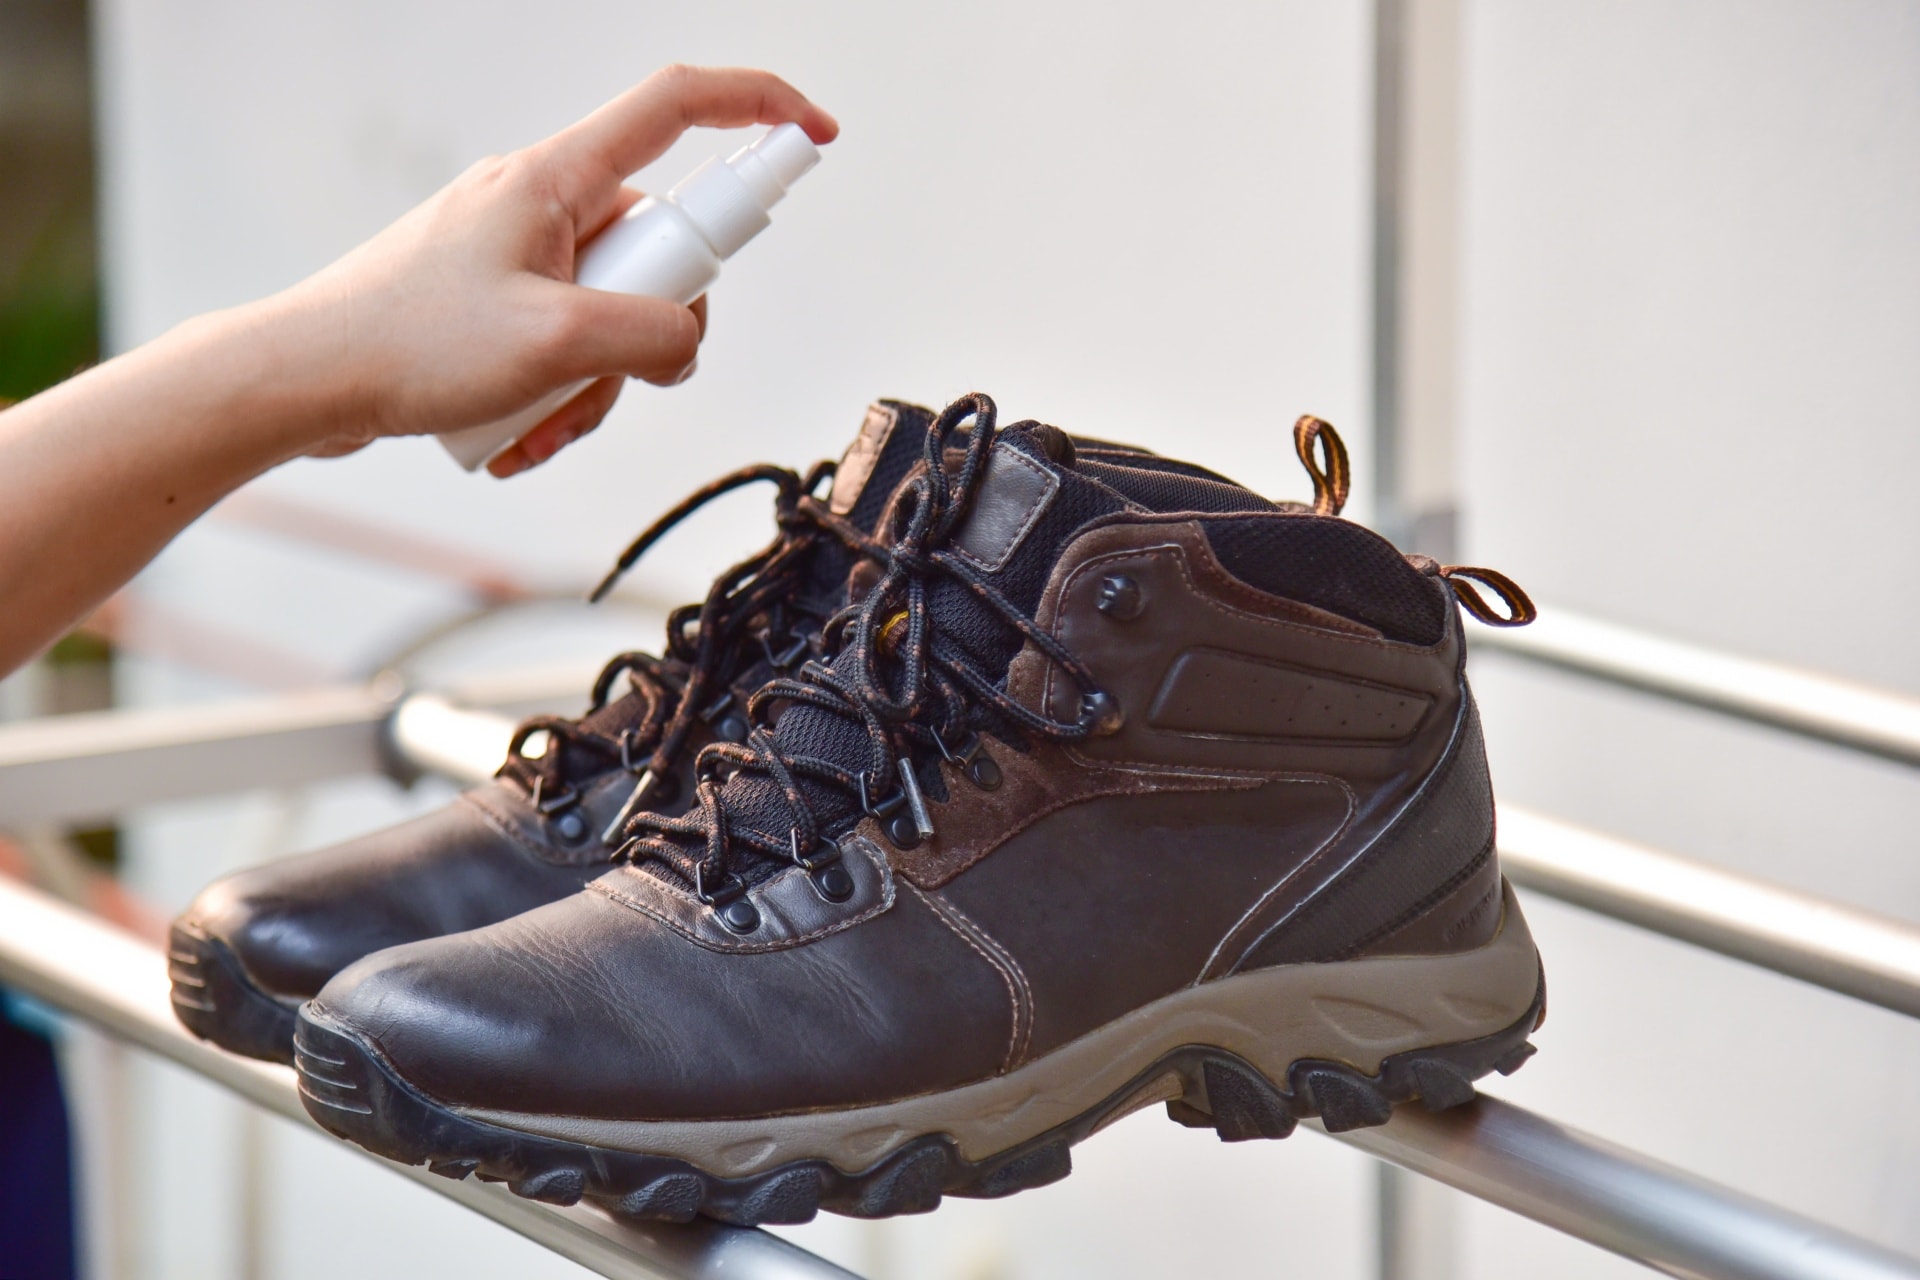 鞋子去异味 Removing odor from shoes1